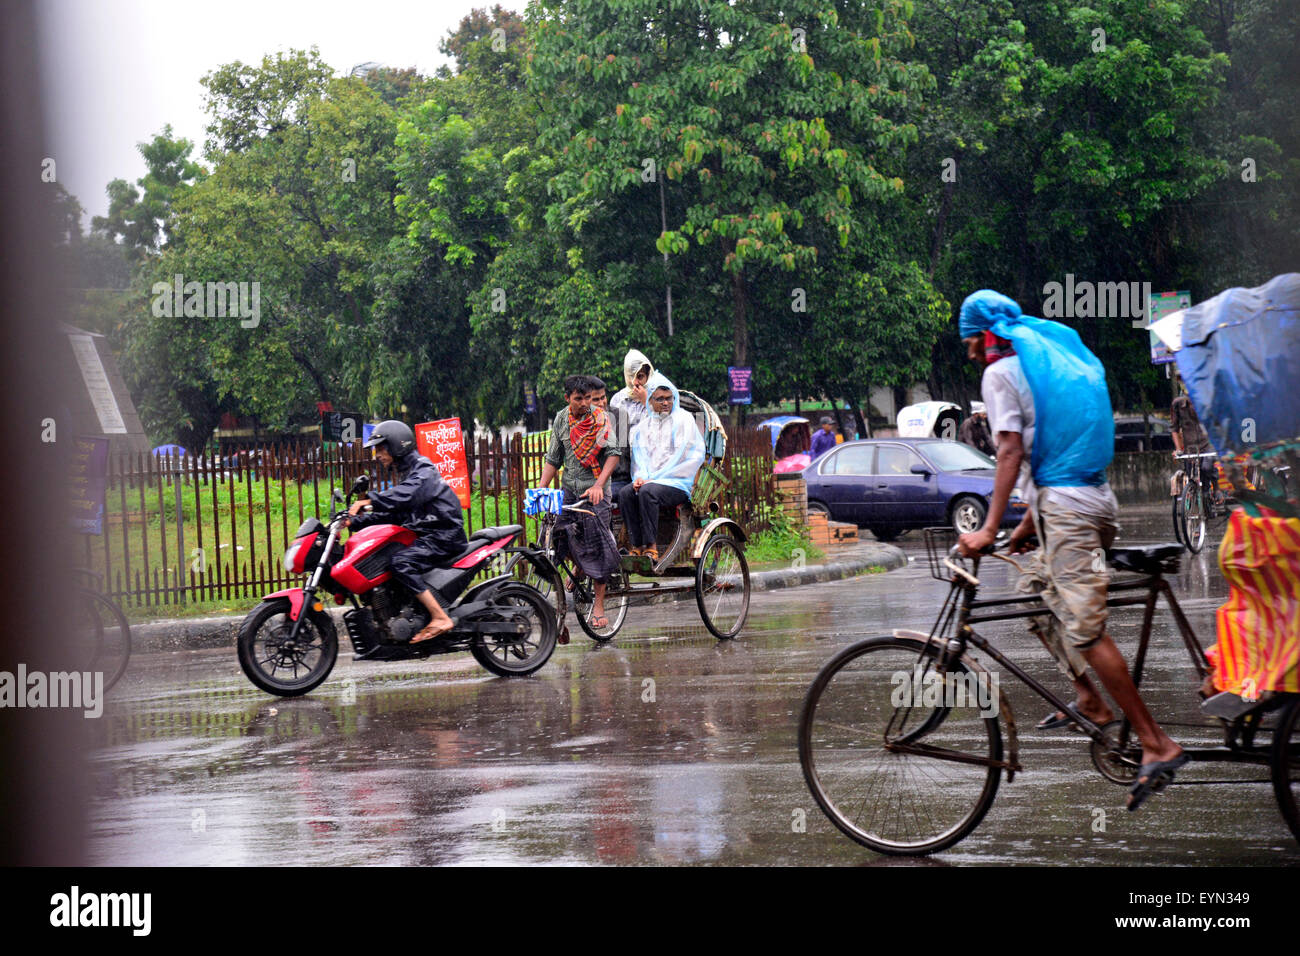 Dhaka, Bangladesch. 1. August 2015. Bangladesh-Rikscha-Fahrer in die Pedale treten ihre Fahrzeuge durch schweren Regen in Dhaka, Bangladesch. Am 1. August 2015 nach schweren Monsun Regenfälle verursacht überschwemmte die meisten des Bereichs in der Hauptstadt Dhaka in Bangladesch. Straßen wurden teilweise unter Wasser machen Reisen gefährlich. Eine Reihe von Fahrradrikschas hob im Wasser. Bildnachweis: Mamunur Rashid/Alamy Live-Nachrichten Stockfoto